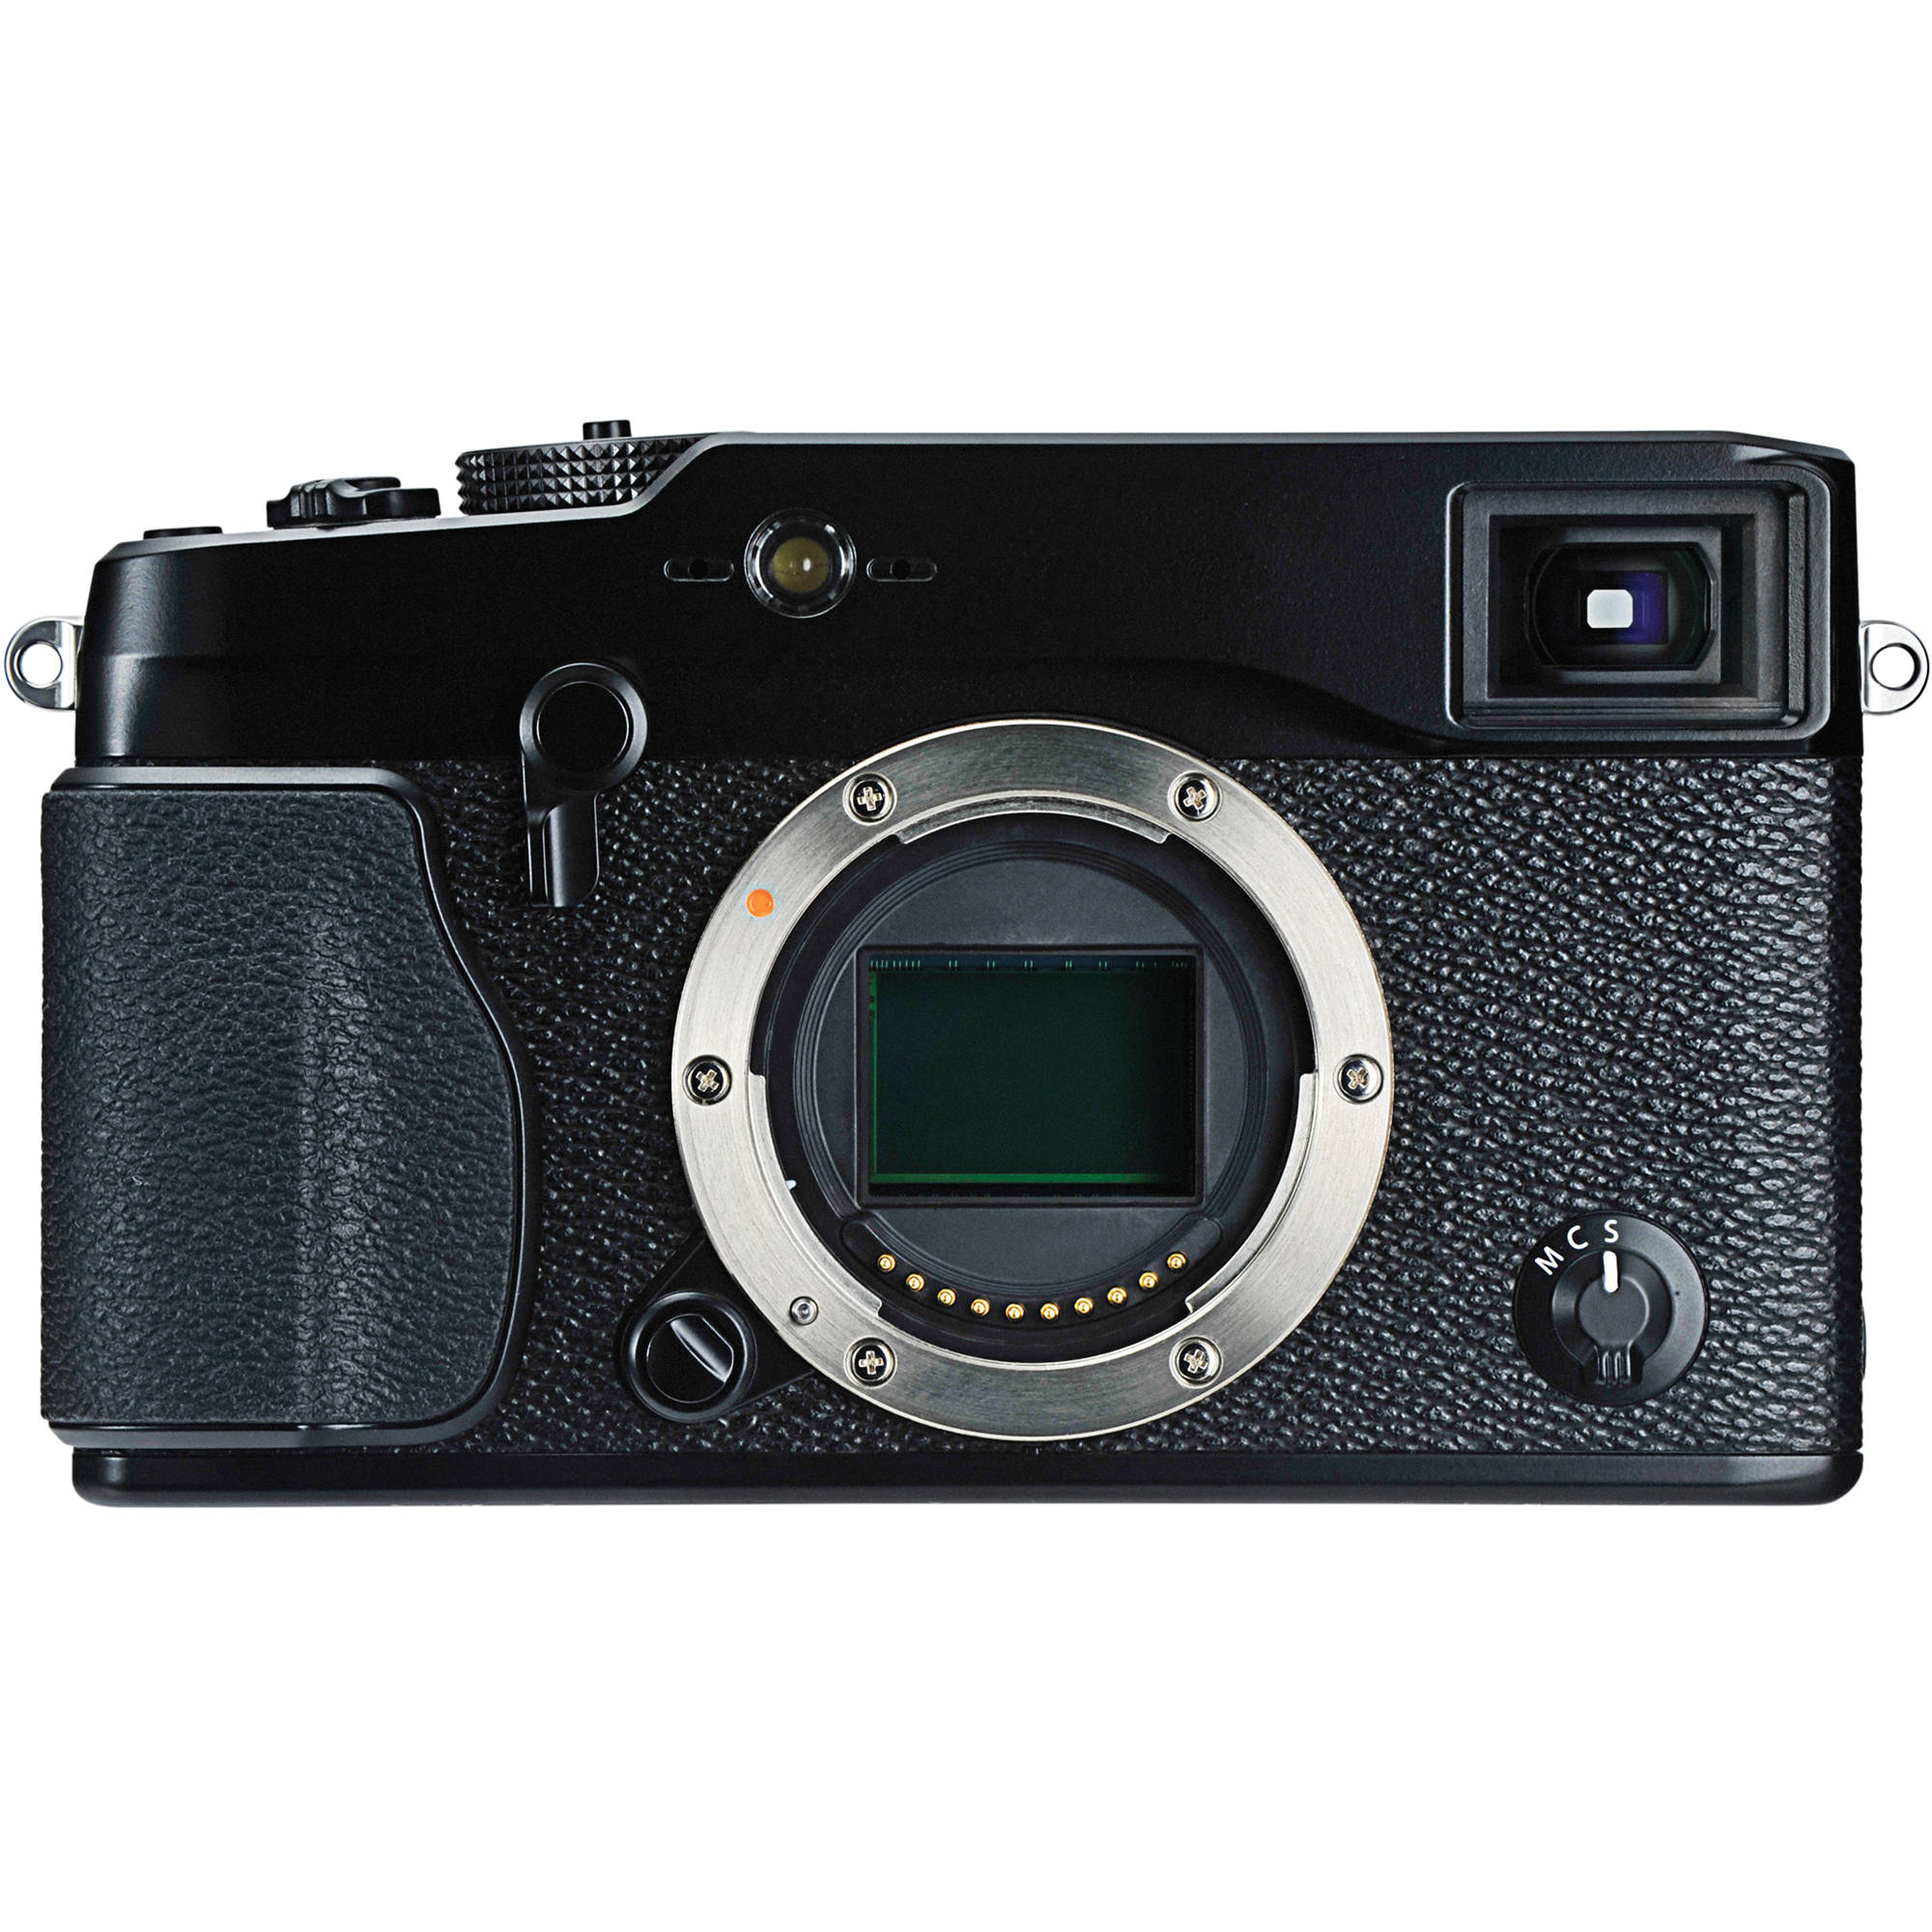 Fujifilm X-Pro1 Camera